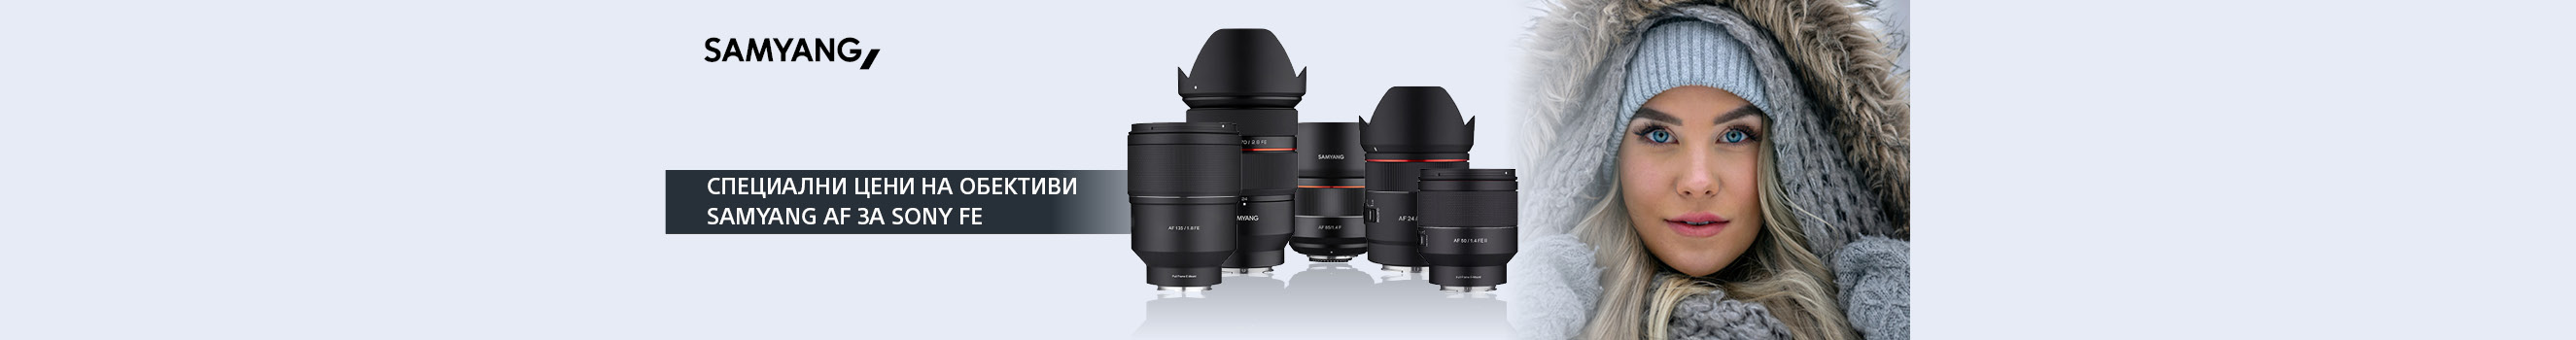 Вземете Samyang AF за пълноформатни безогледални камери Sony на специална цена 